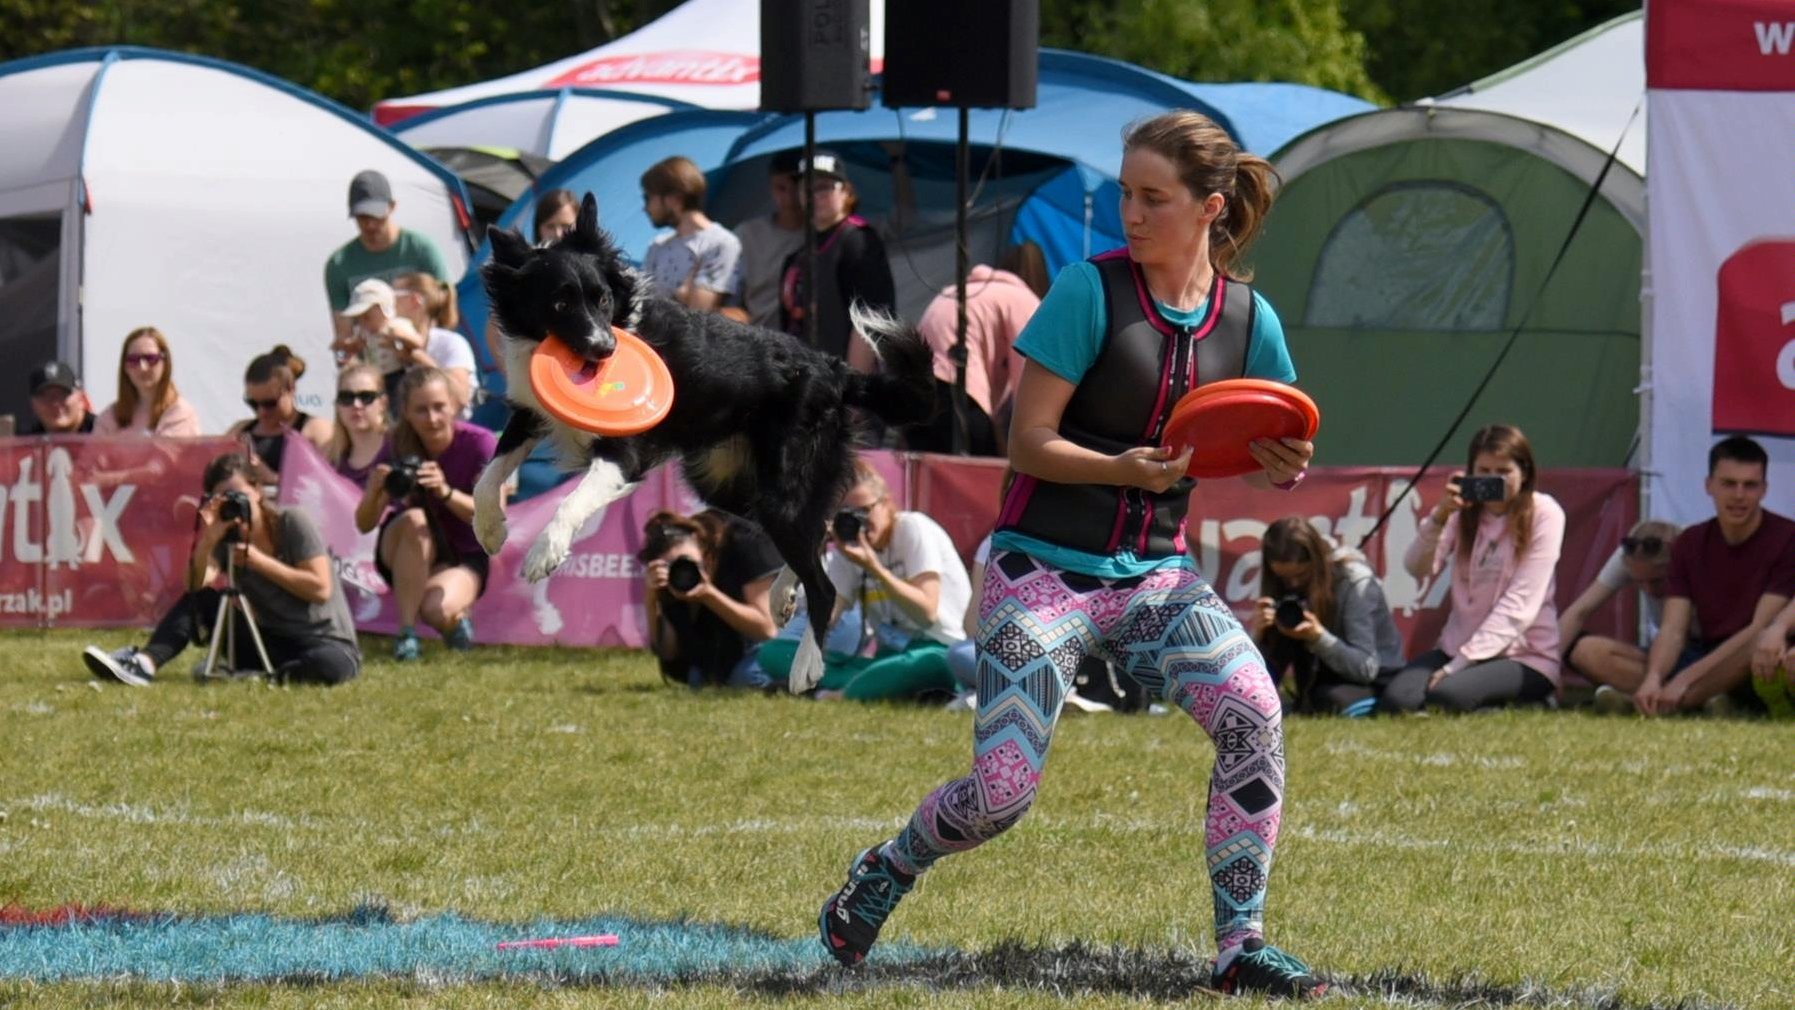 Zdjęcie przedstawia dziewczynę rzucającą frisbee oraz psa, który łapie frisbee w locie. W tle widać obserwujących pokaz ludzi. - grafika artykułu